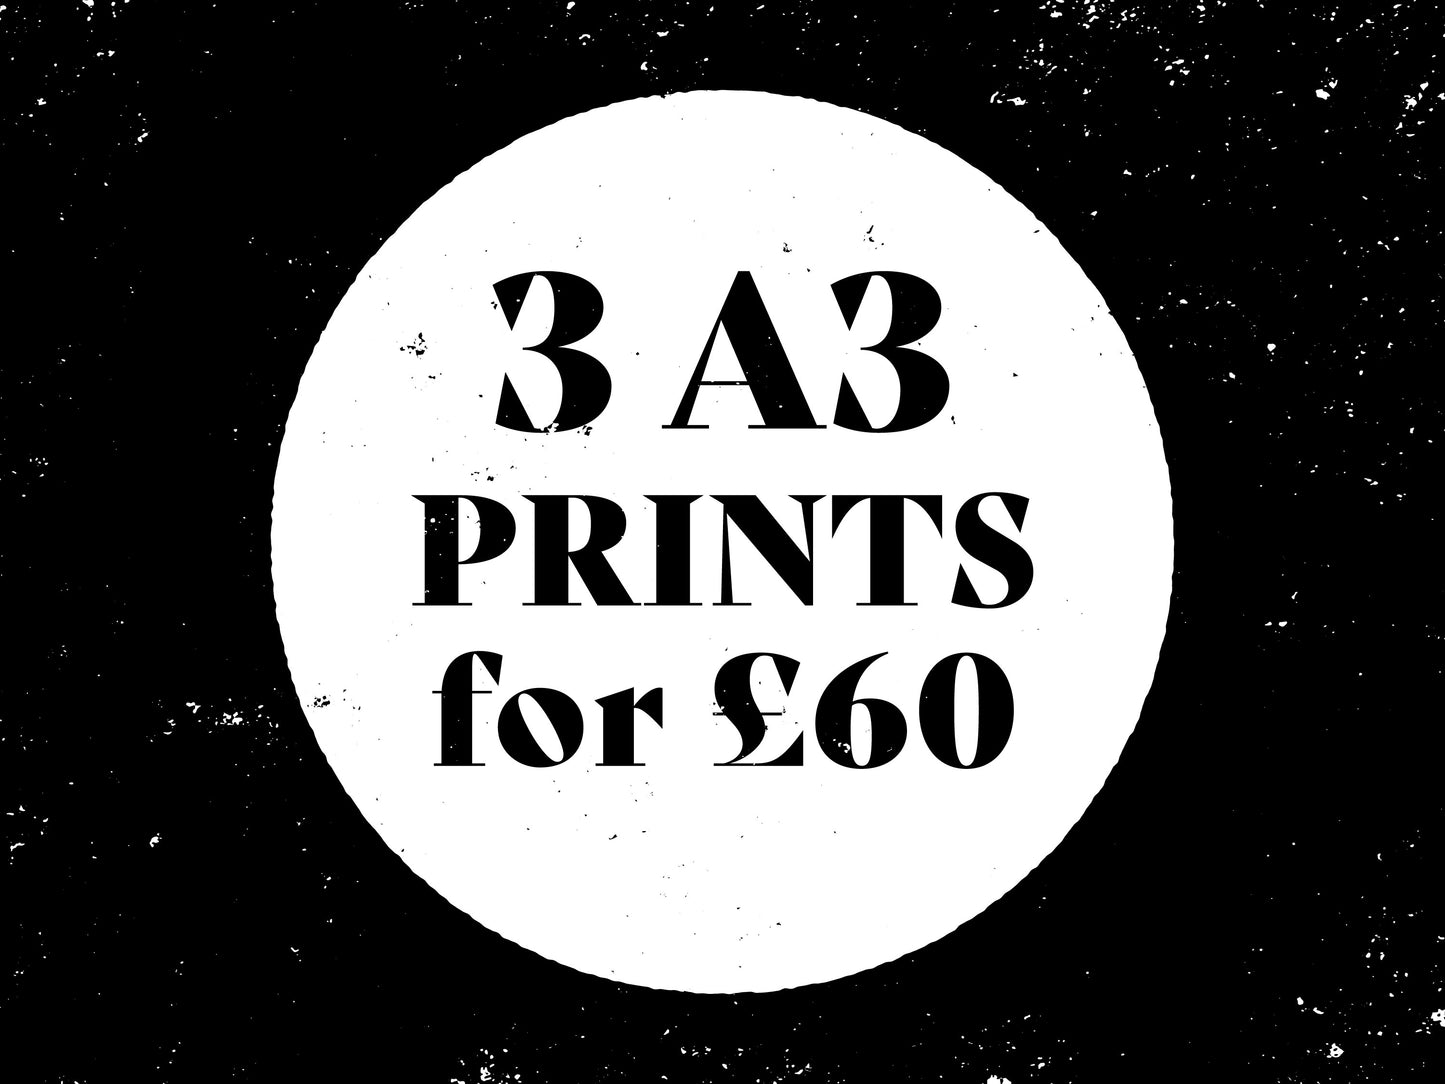 POSTER BUNDLE - 3 A3 Prints Bundle - Wall Art Print Set - Set of 3 Posters